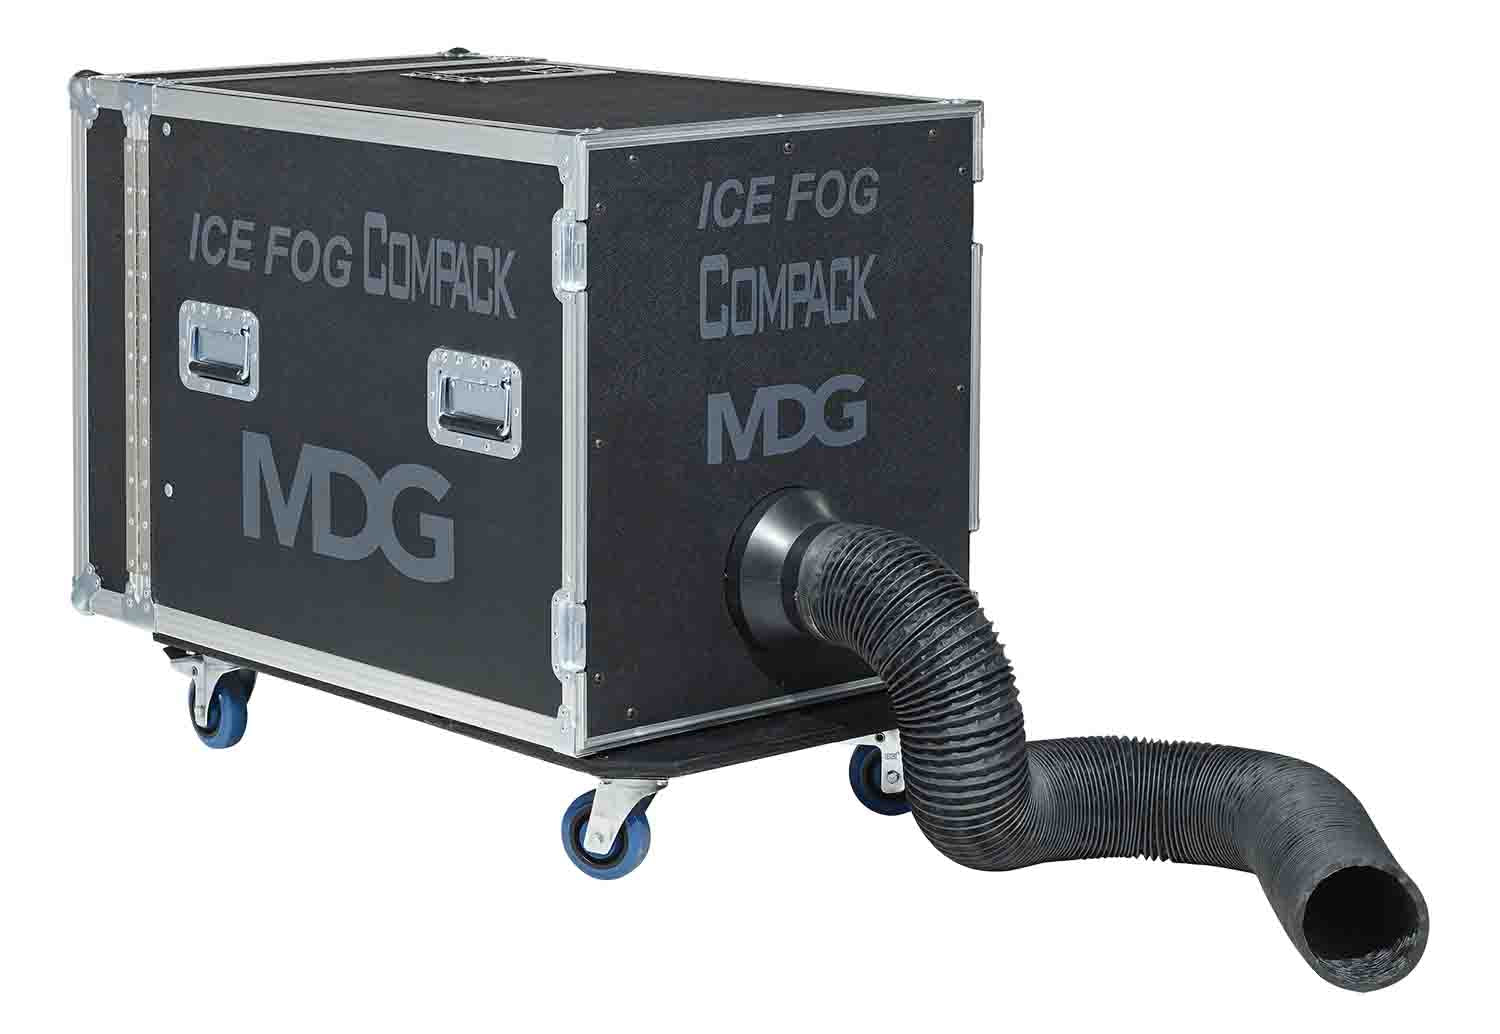 MDG ICE FOG Compack Low Lying Fog Generator - Hollywood DJ